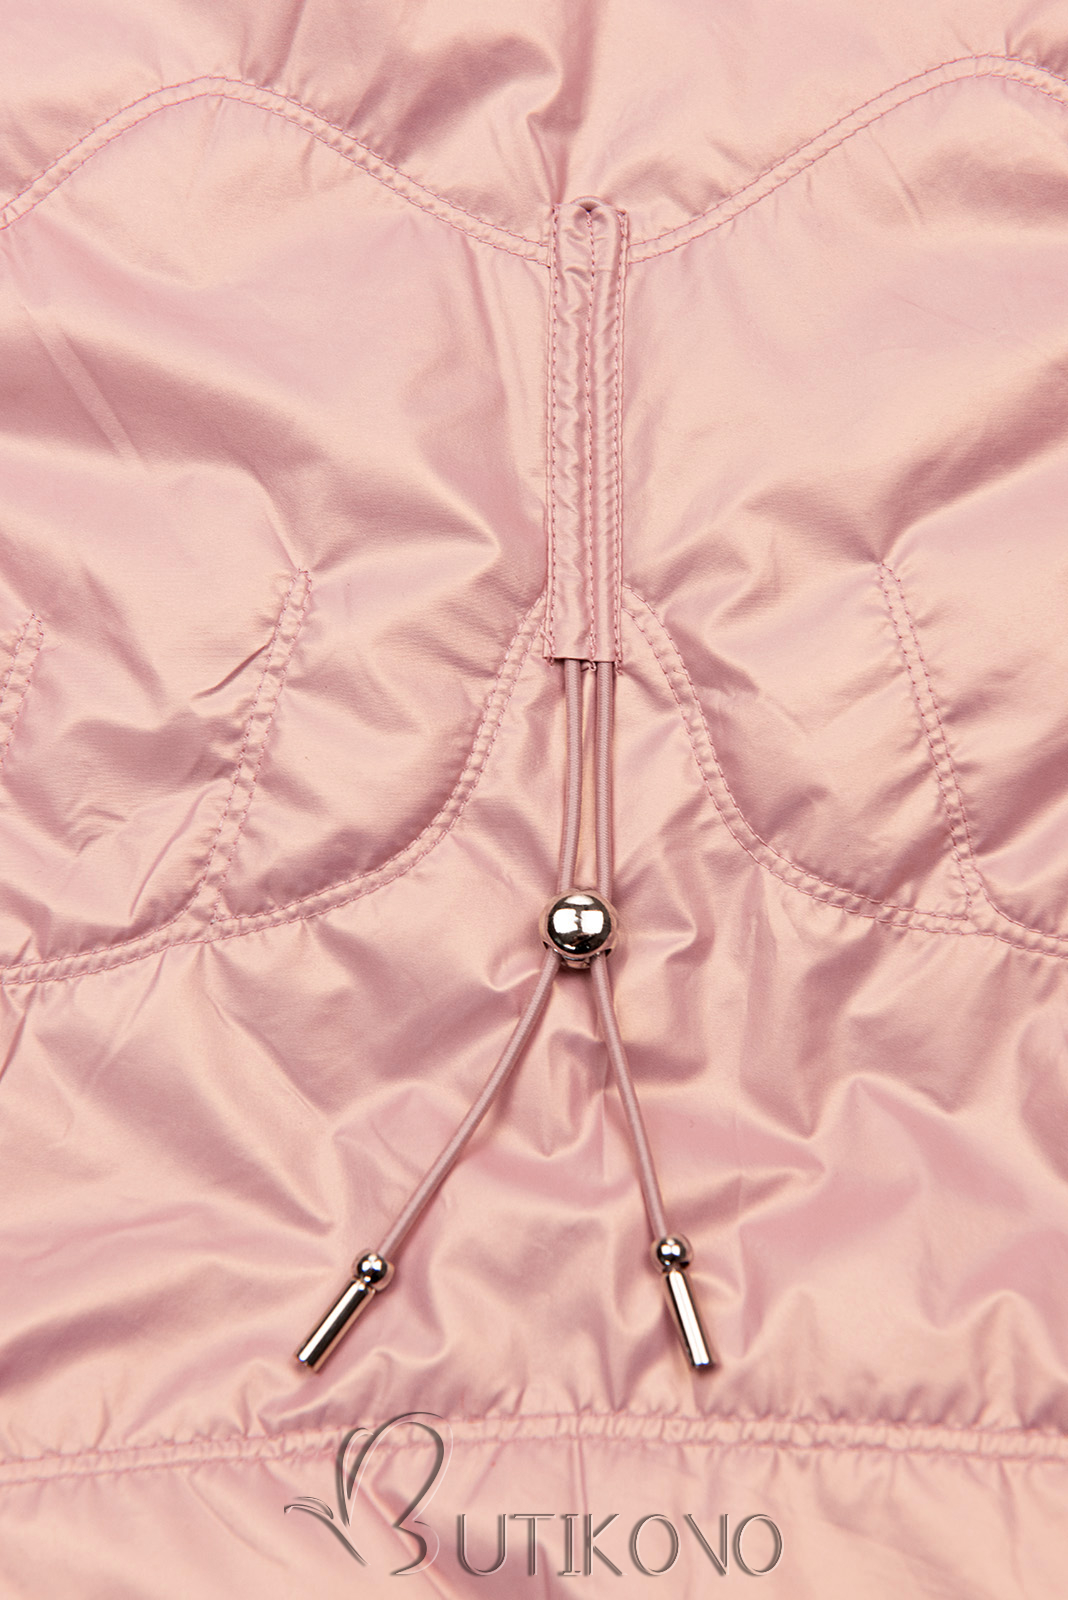 Perleťově růžová přechodná bunda s kapucí